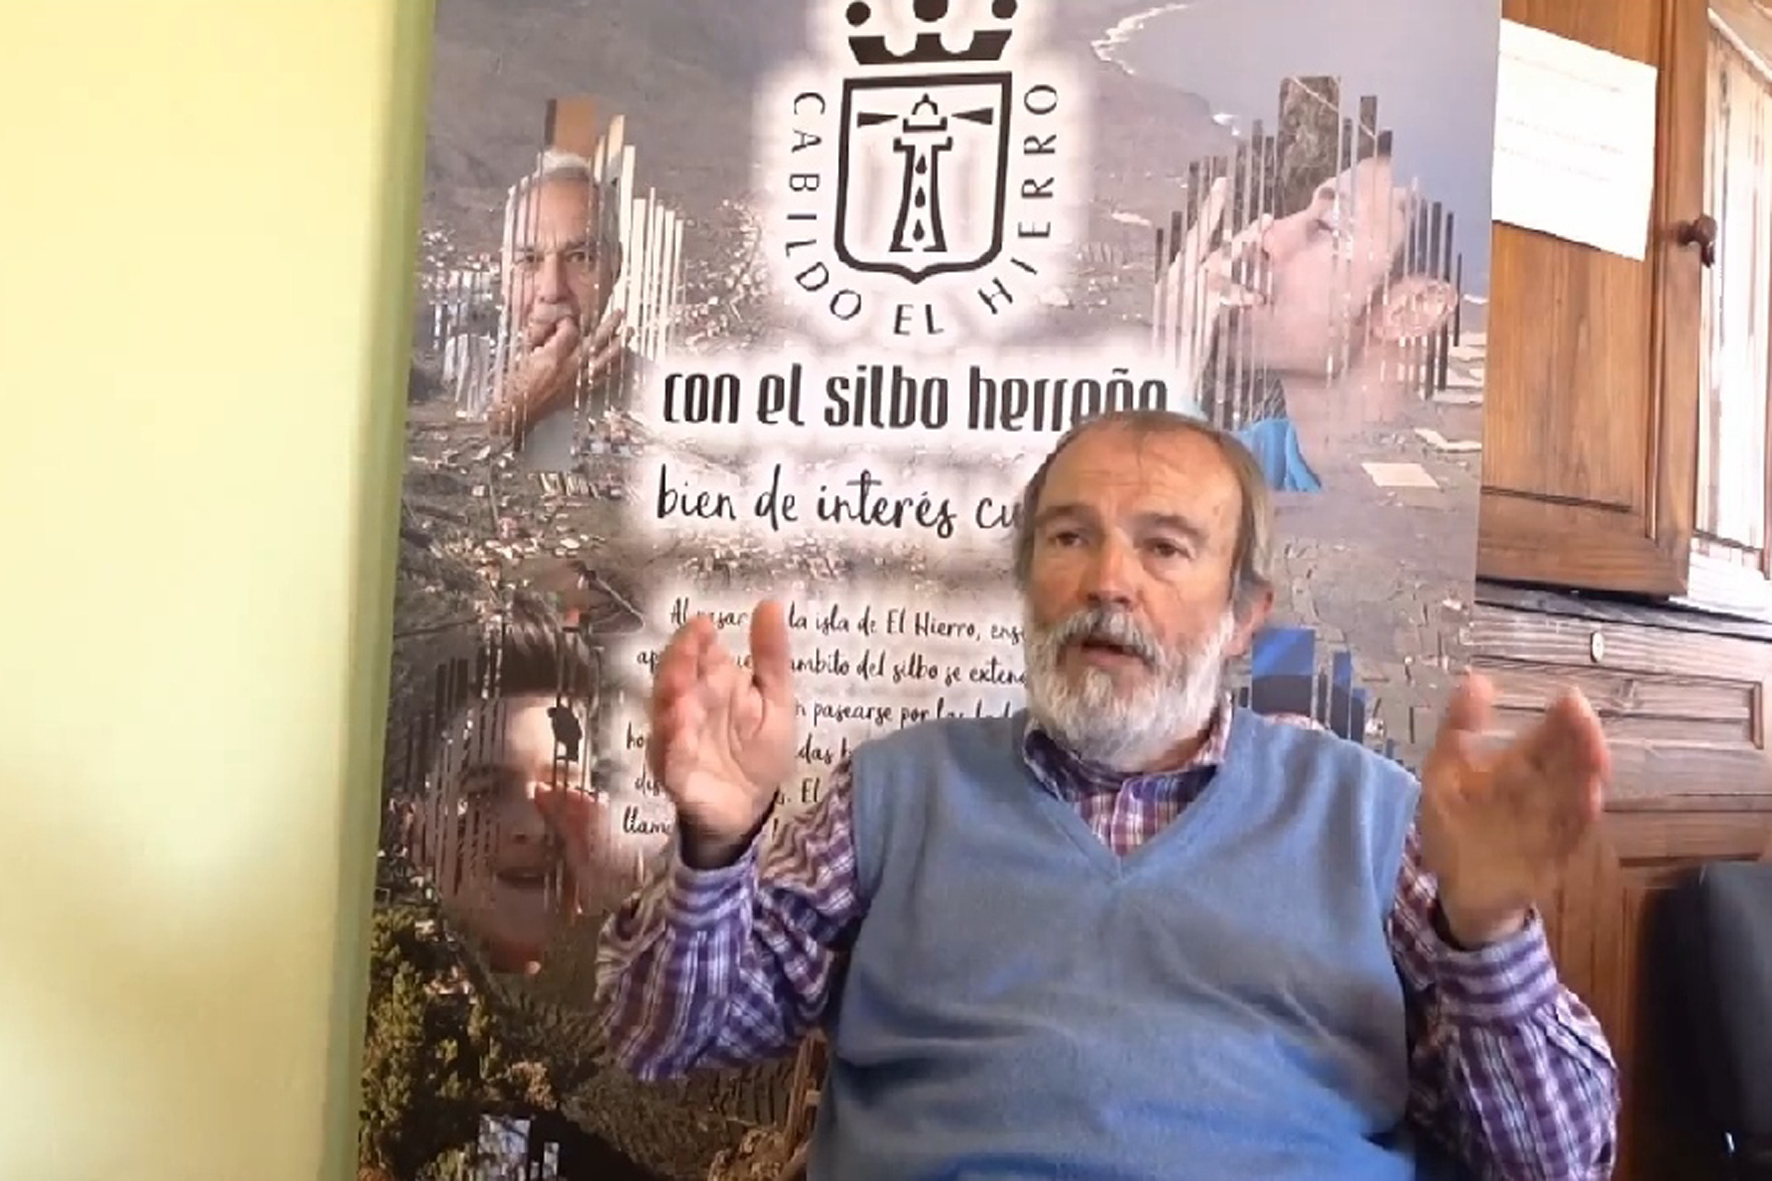 Ossinissa, Amador y Asociación Cultural para la investigación y conservación del Silbo Herreño piden el Premio Canarias para Manuel Lorenzo Perera y el Centro de la Cultura Canaria